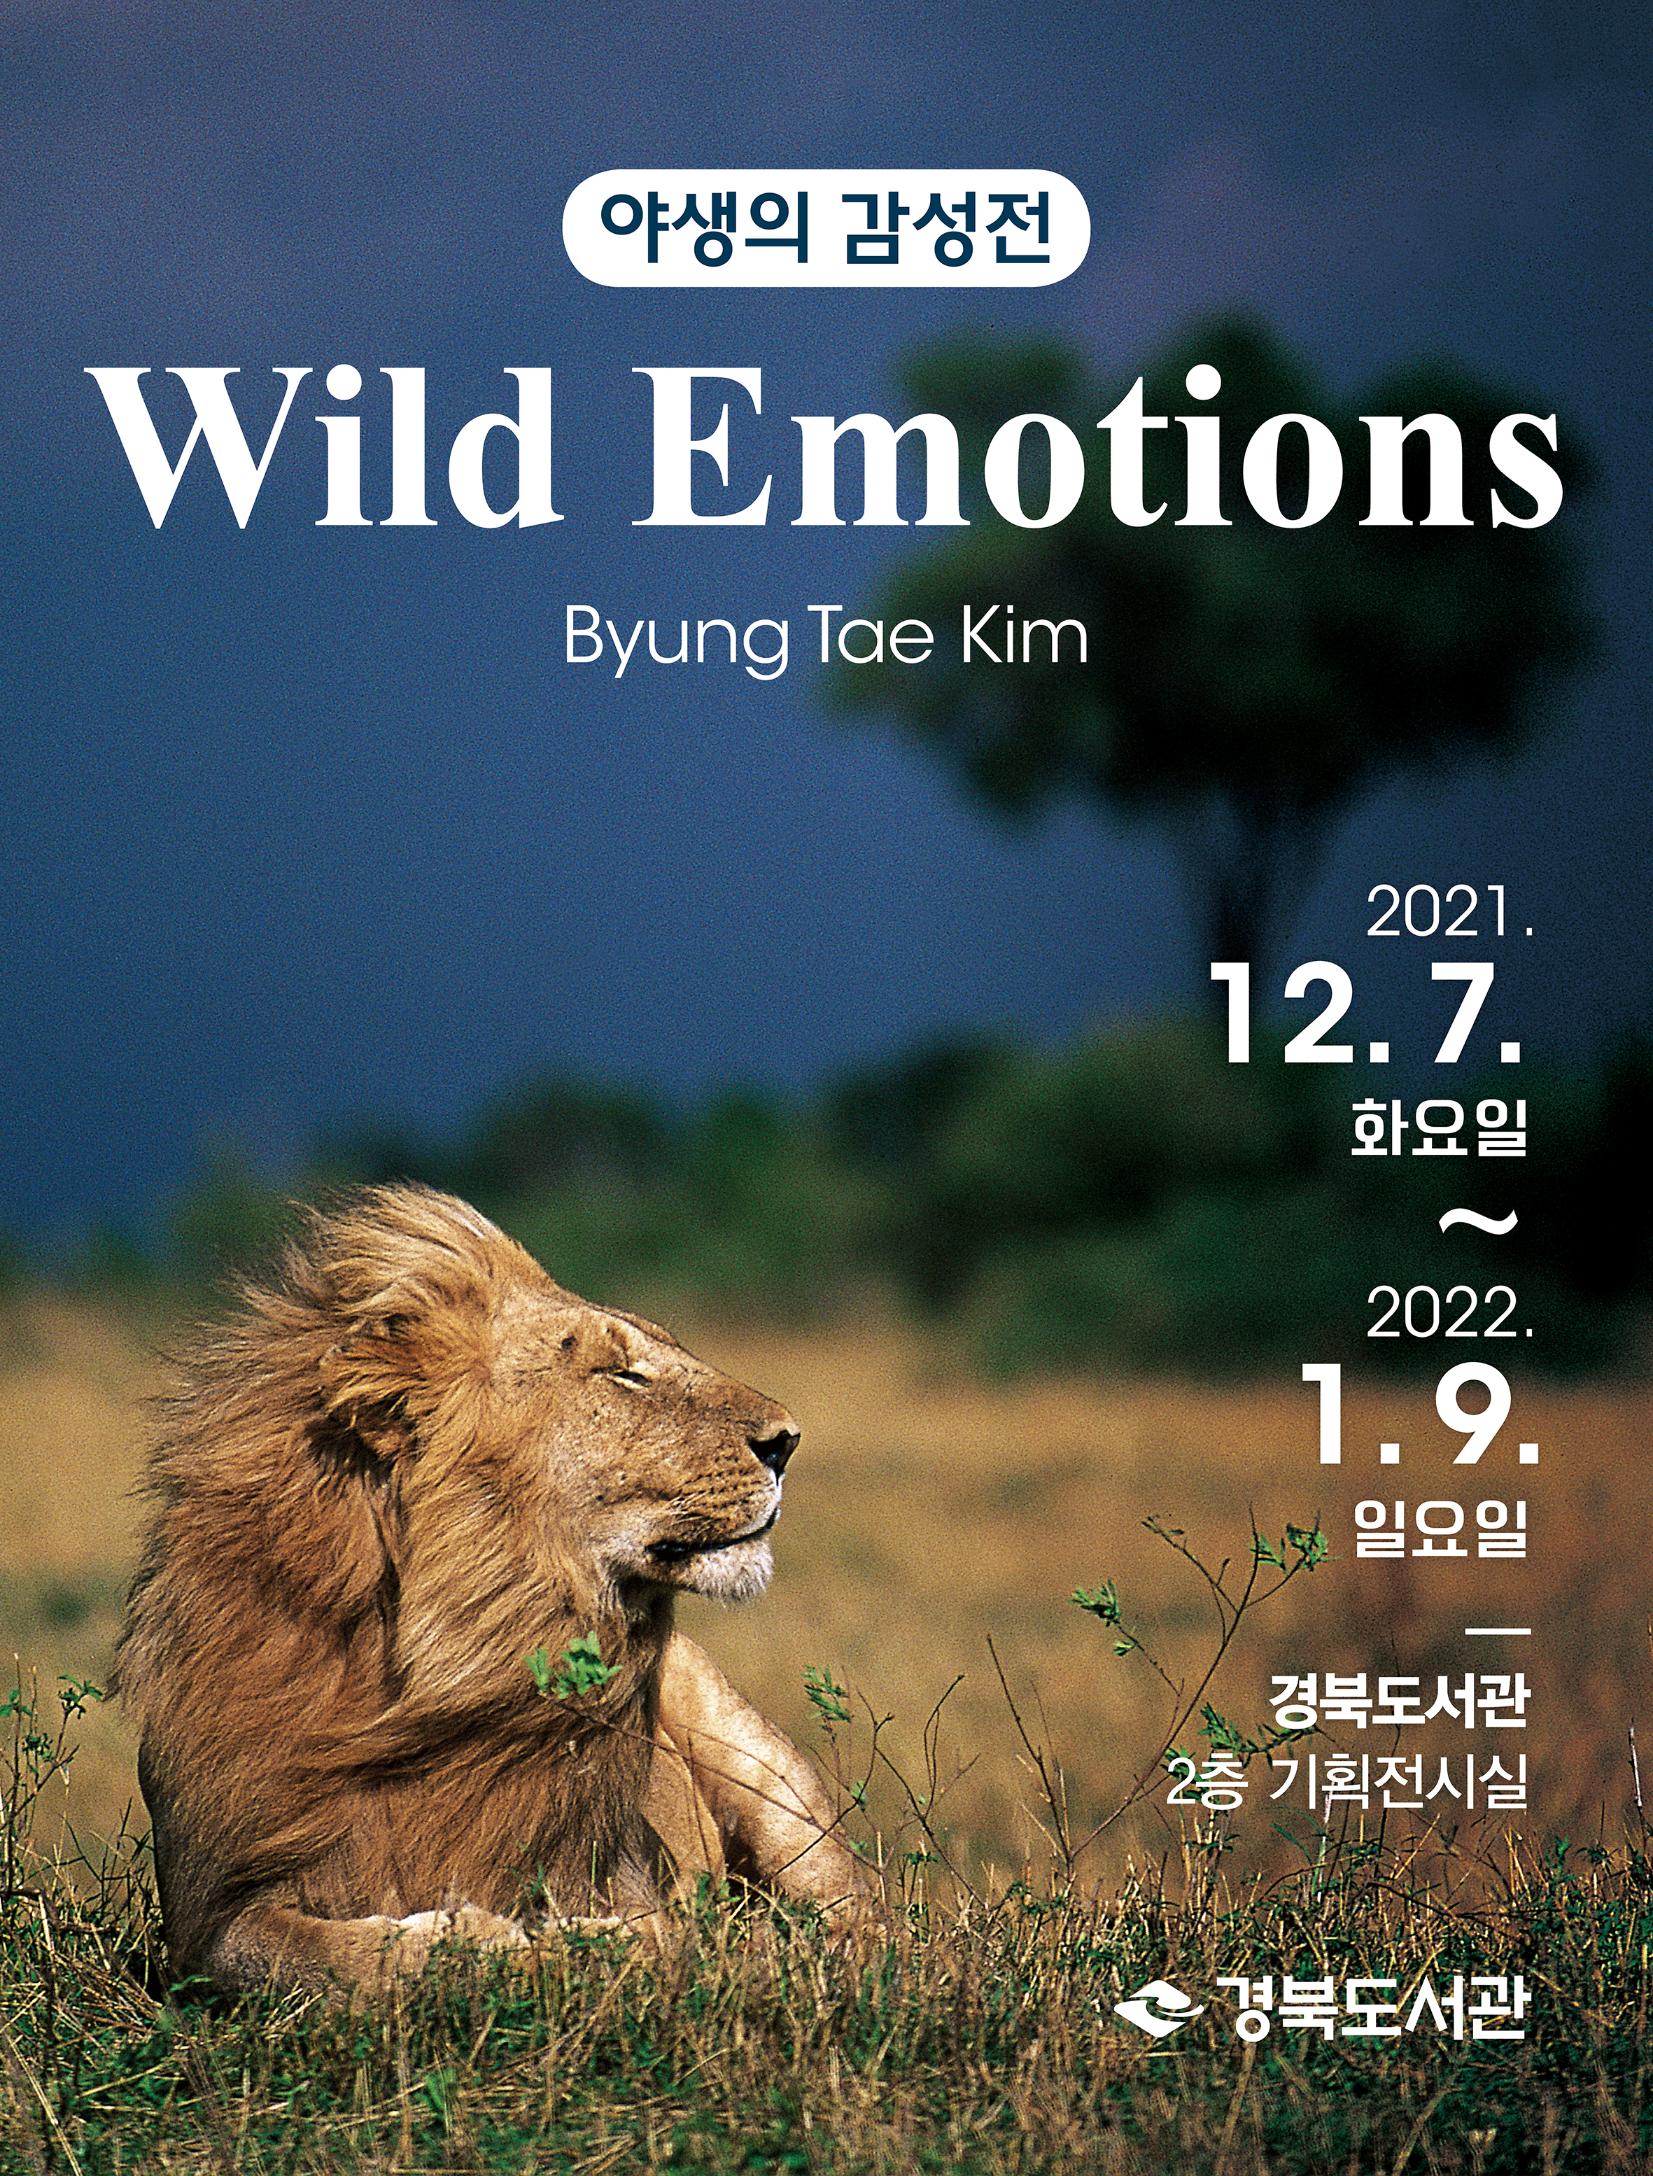 「야생의 감성 Wild Emotions 」 사진전